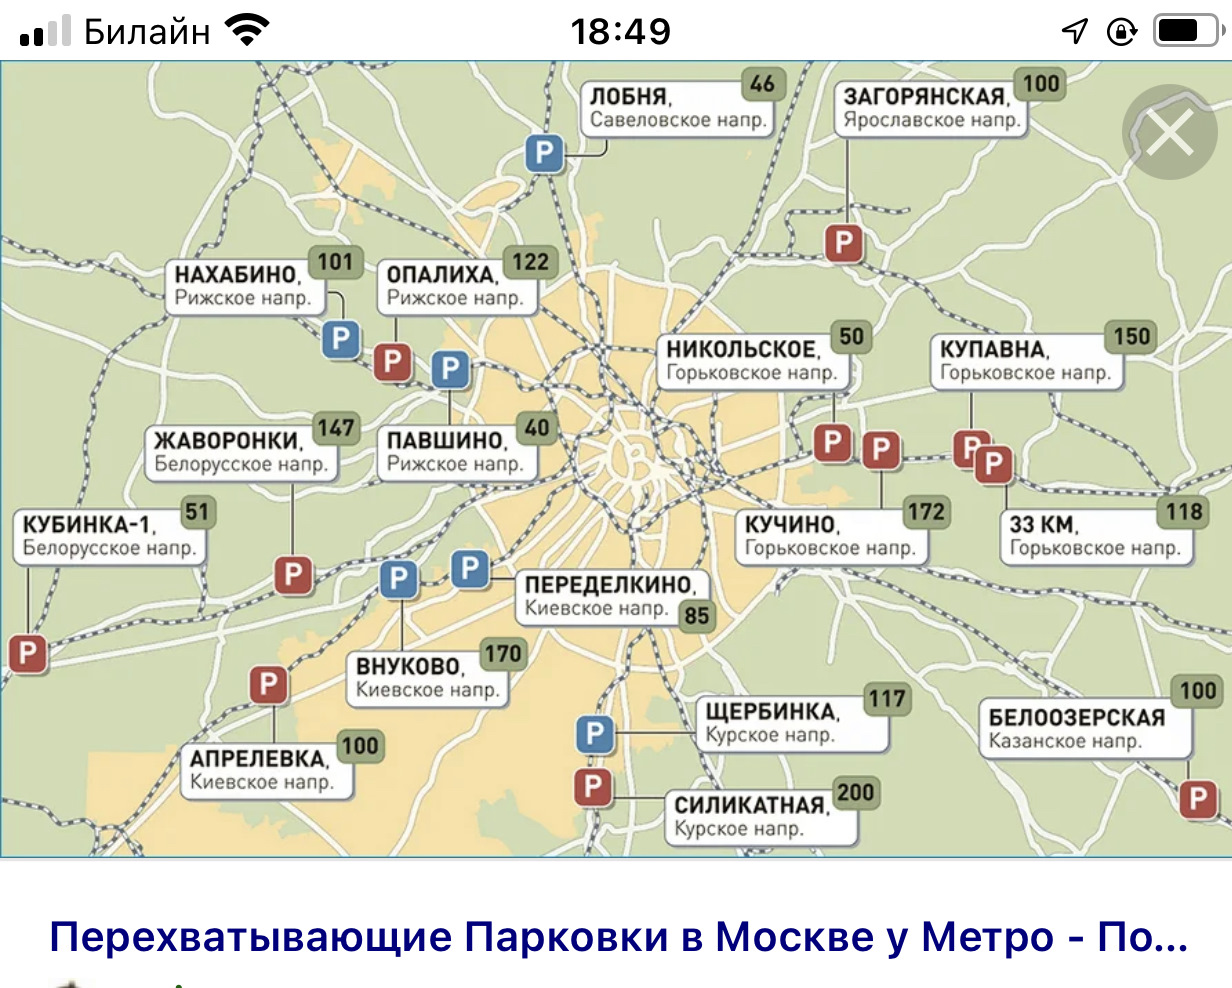 Метро никольское. Перехватывающие парковки Москва на карте. Перехватывающие парковки в Москве у метро. Перехватывающие парковки схема.